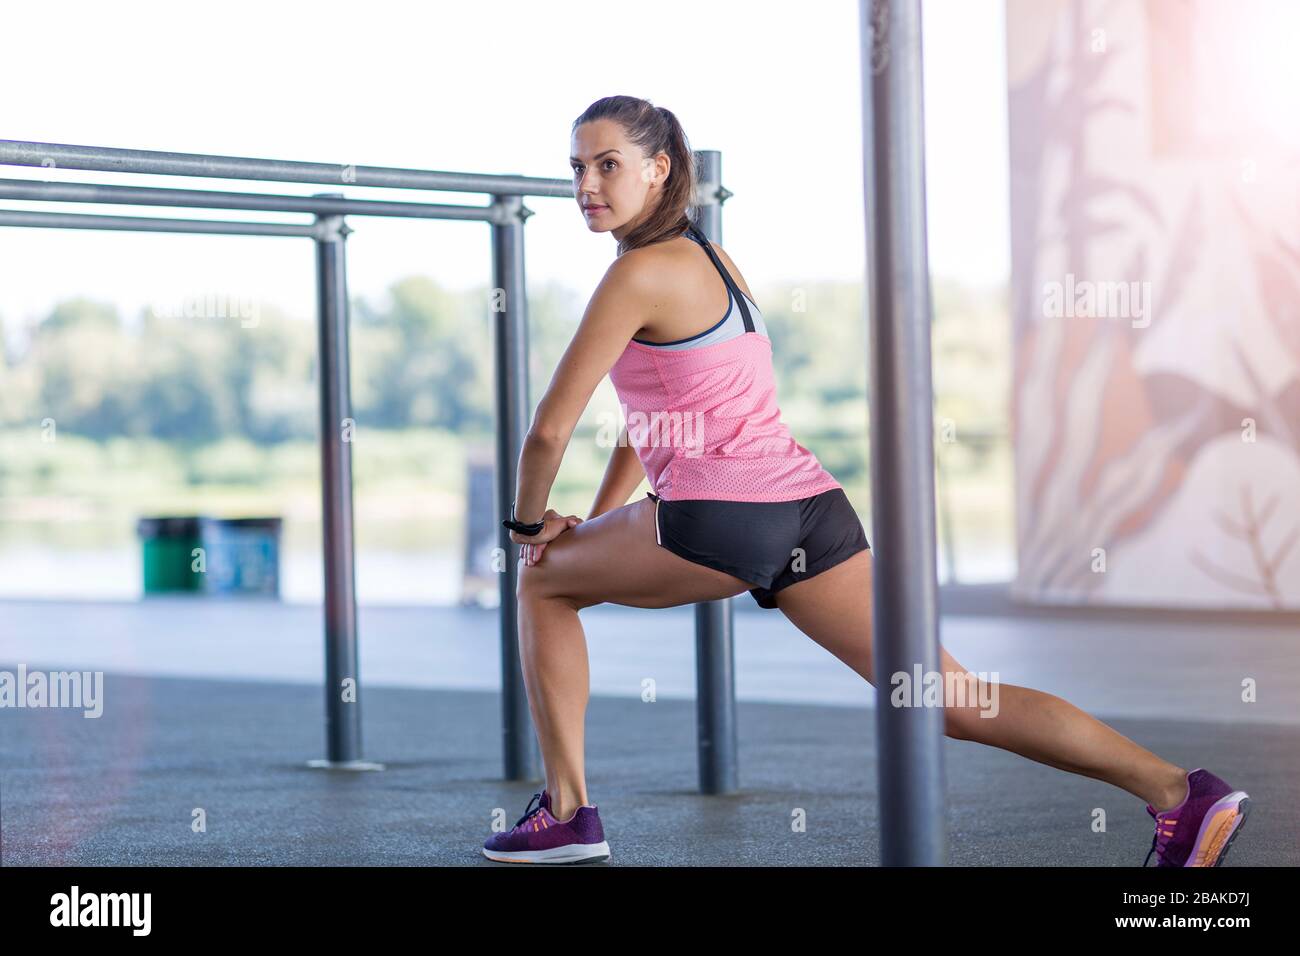 Giovane donna che fa esercizio di fitness nell'area urbana Foto Stock